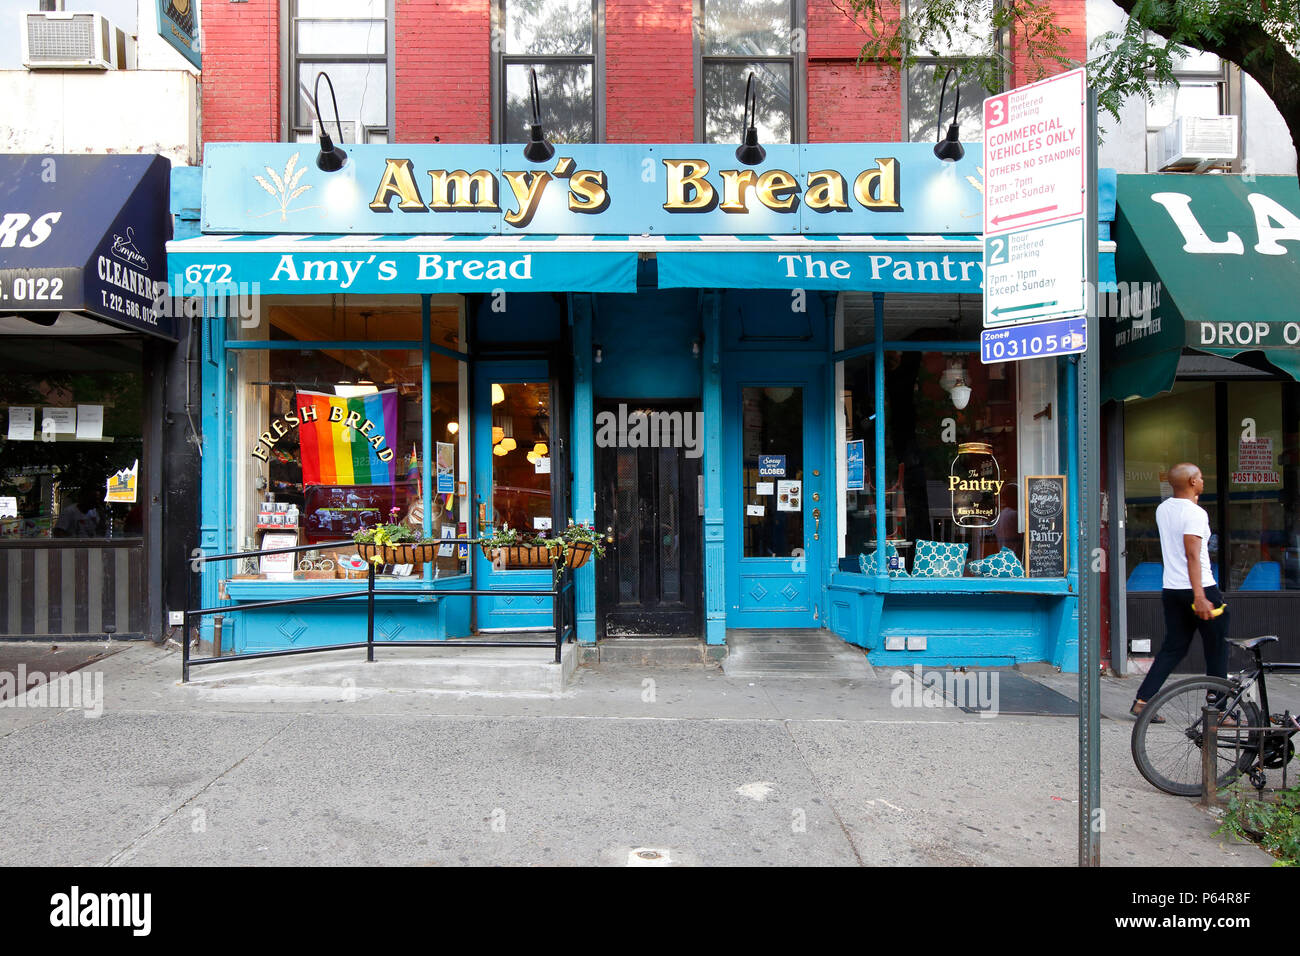 Amy's Bread, 672 9th Avenue, New York, NY. devanture extérieure d'une boulangerie et un café dans le quartier de Hell's Kitchen à Manhattan. Banque D'Images